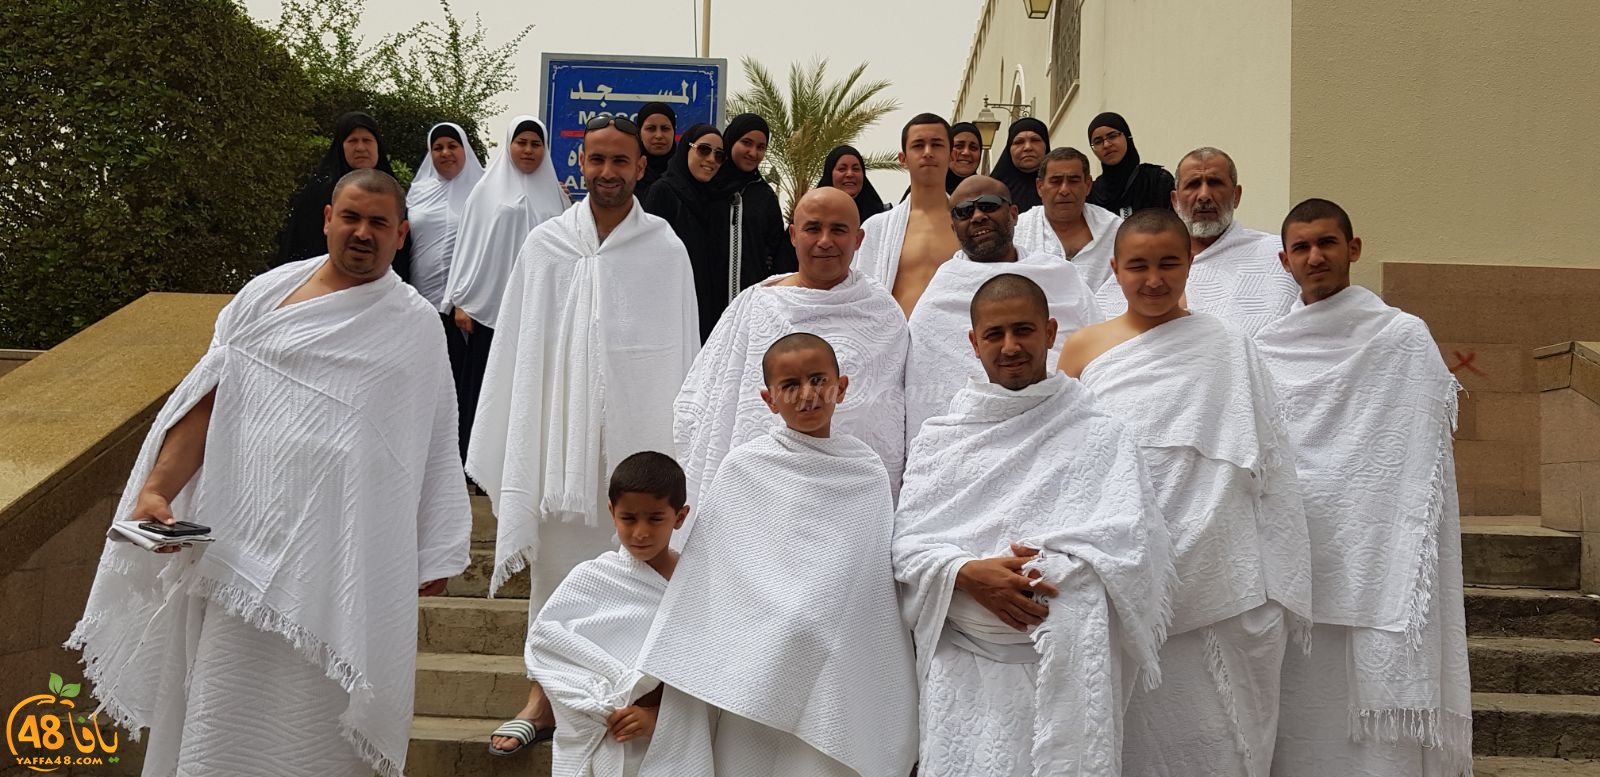  بالصور: معتمرو مدينة يافا يصلون إلى مكة المكرّمة ويؤدون عمرة الربيع